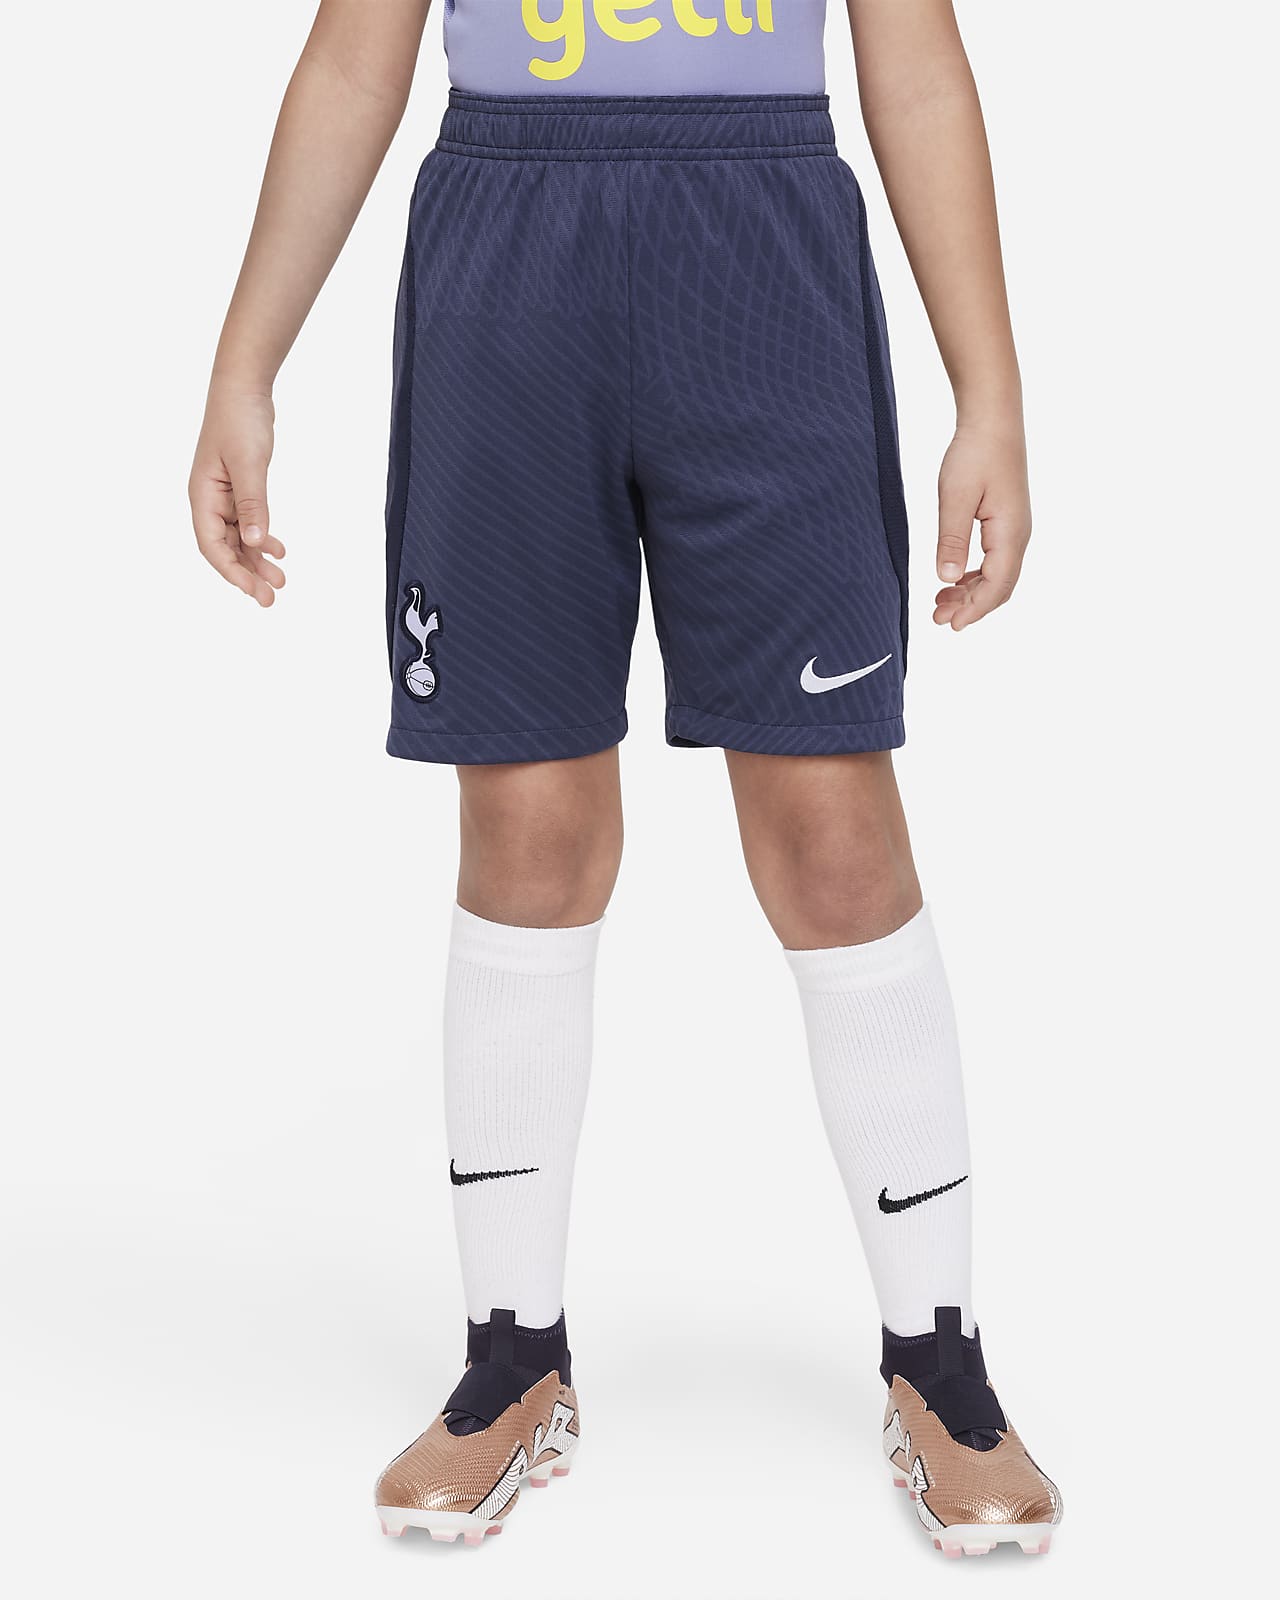 Tottenham Hotspur Strike Pantalons curts de teixit Knit Nike Dri-FIT de futbol - Nen/a